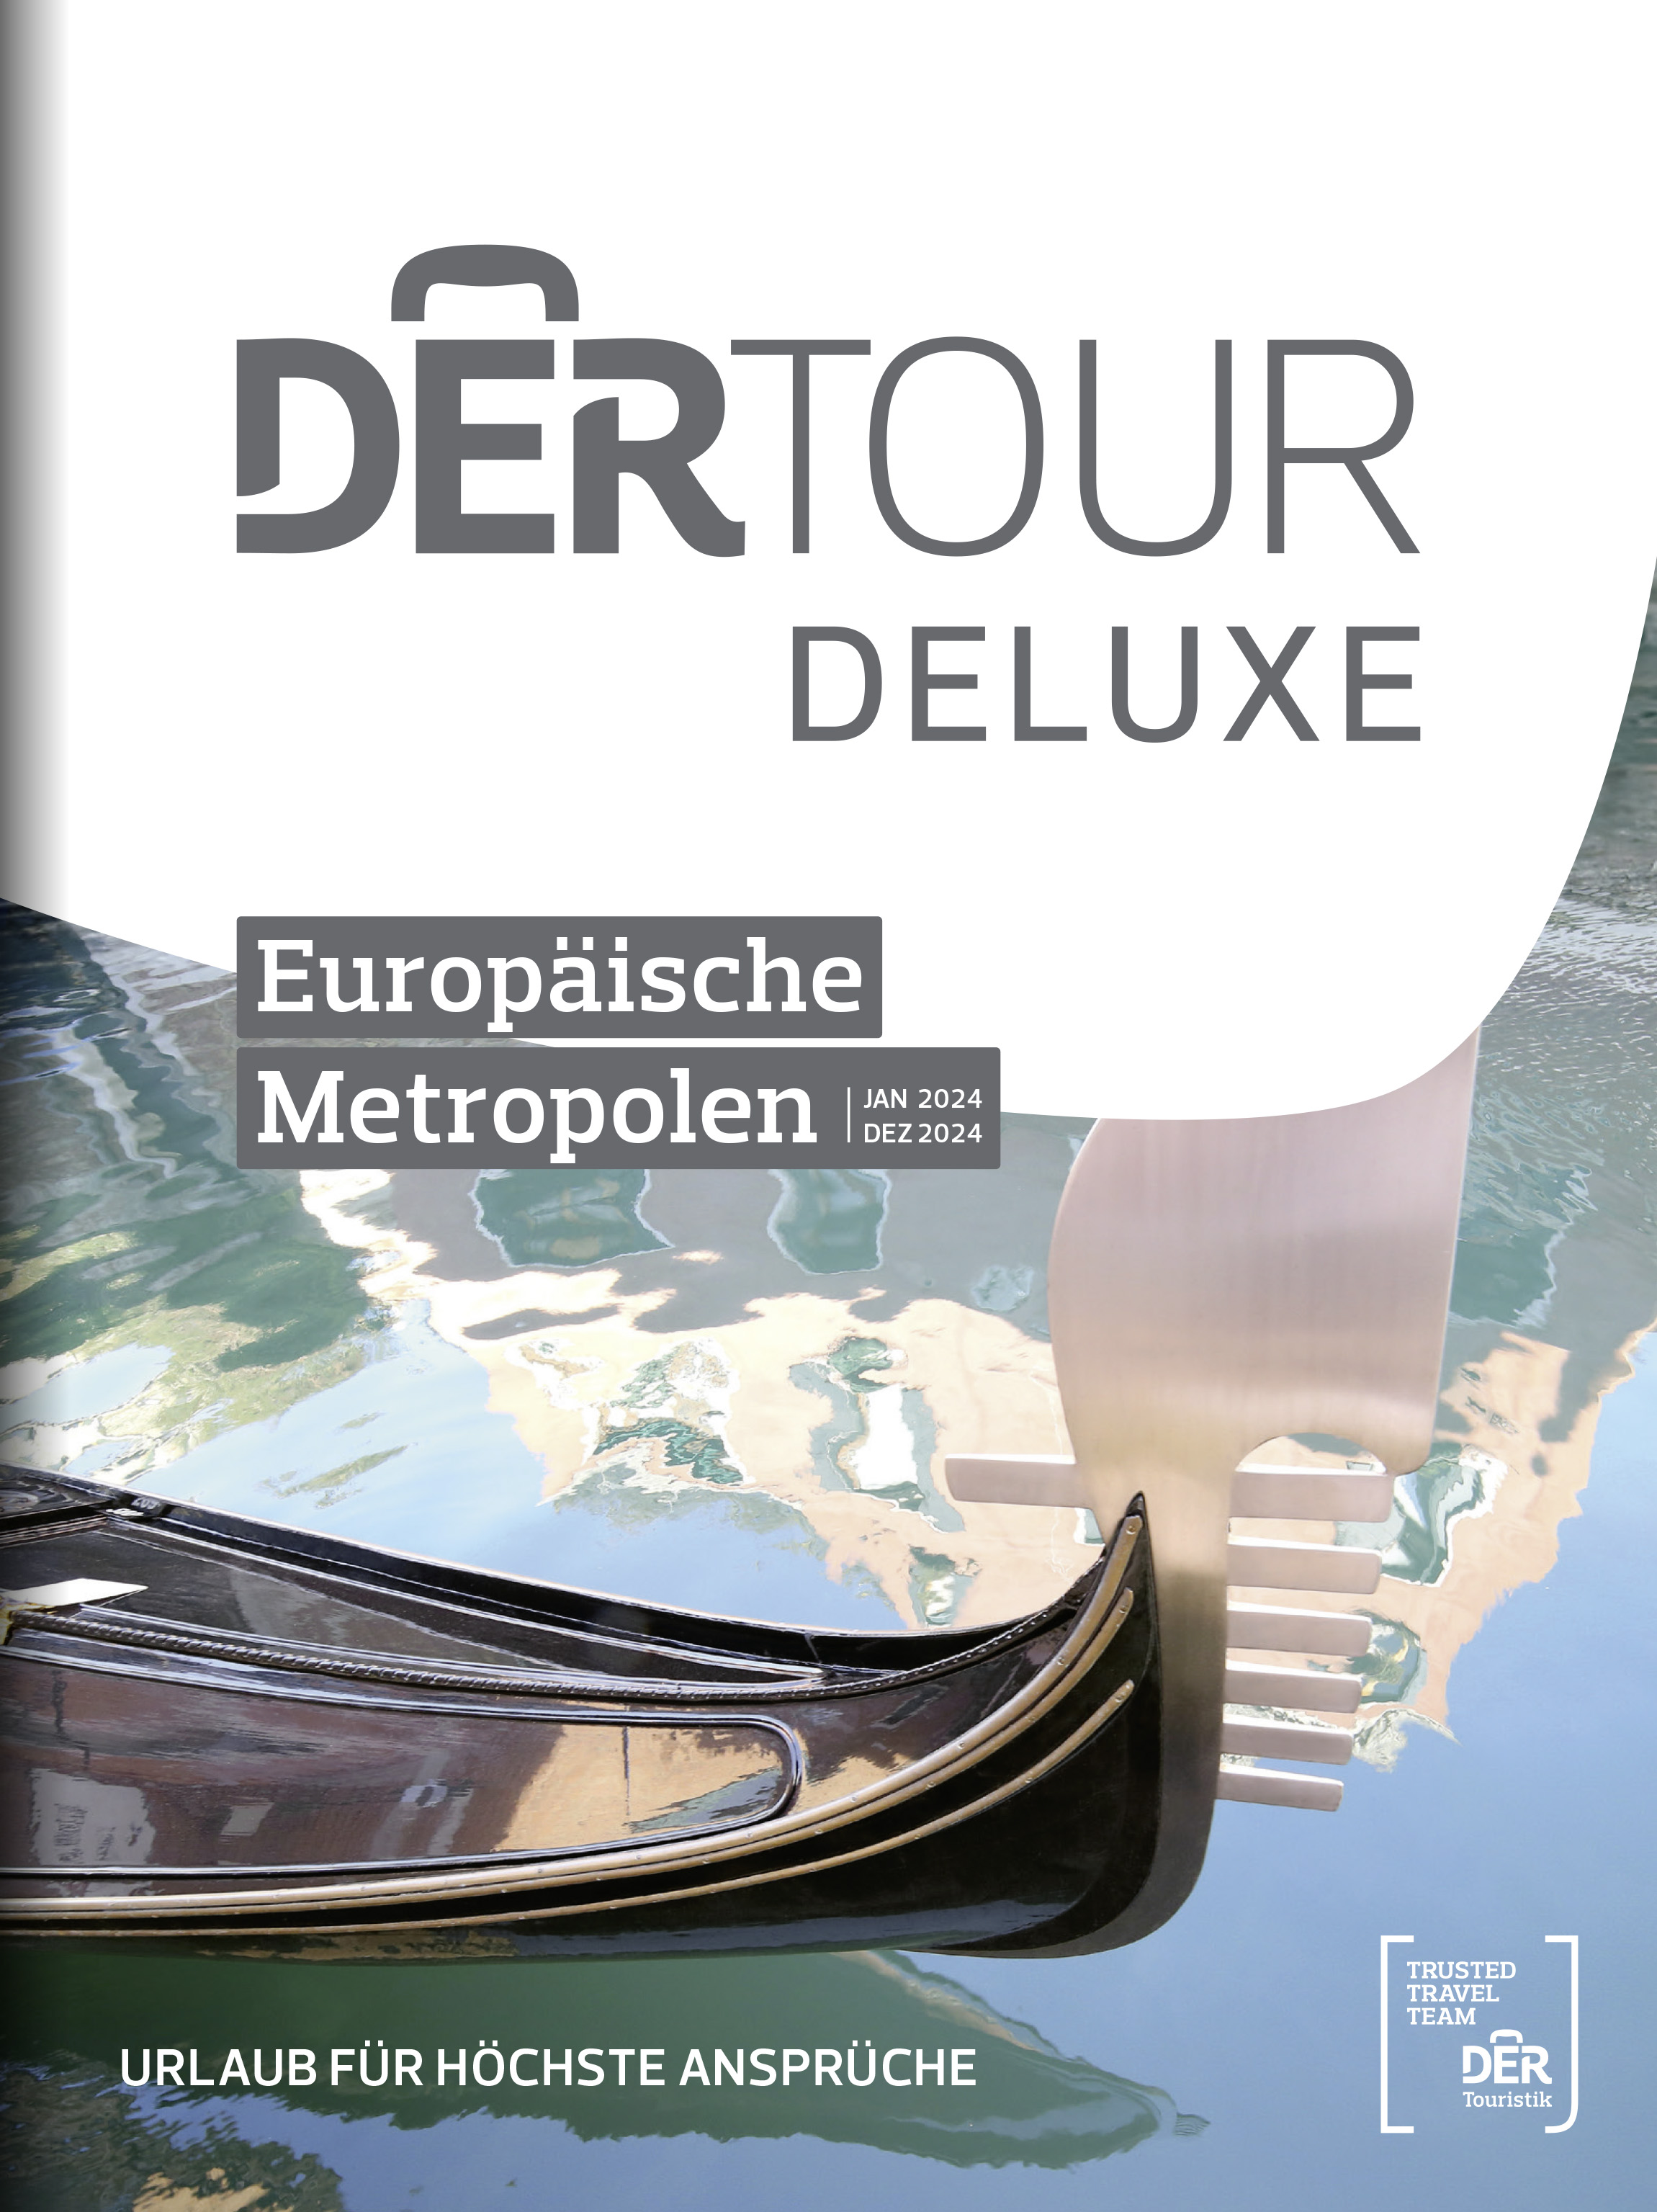 DERTOUR DELUXE Europäische Metropolen 2024 (JP)